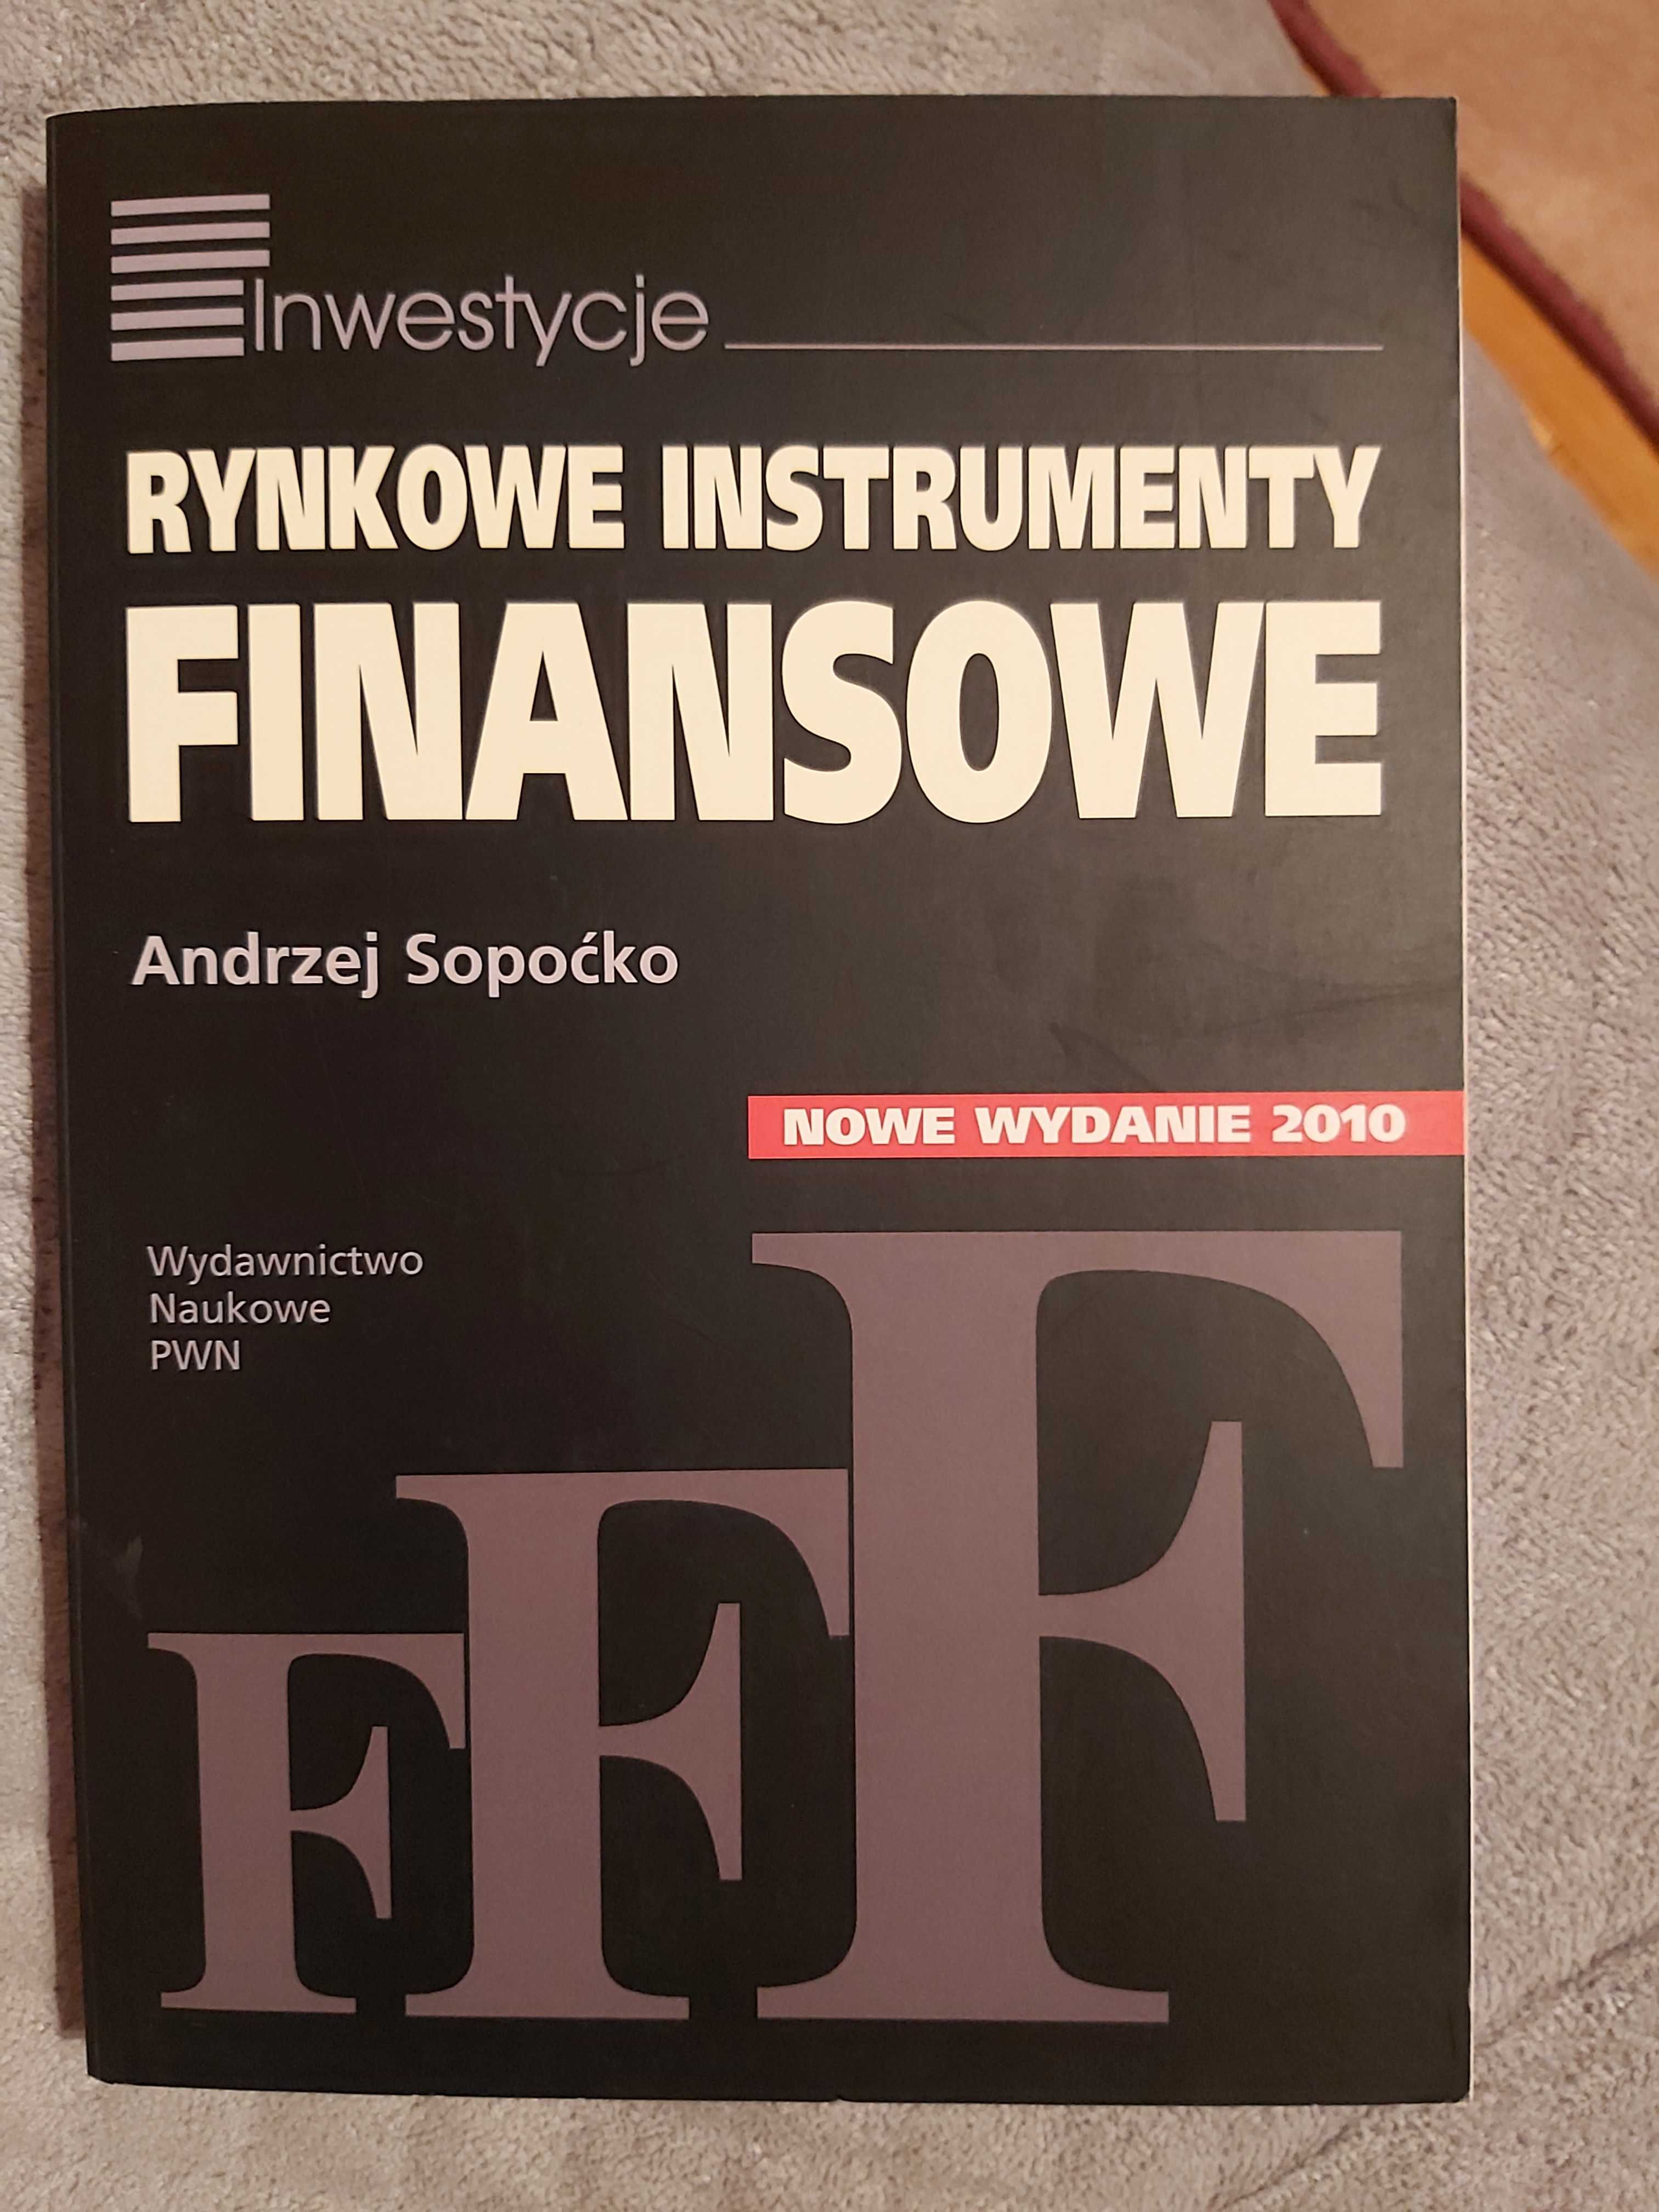 Rynkowe instrumenty finansowe, Andrzej Sopoćko